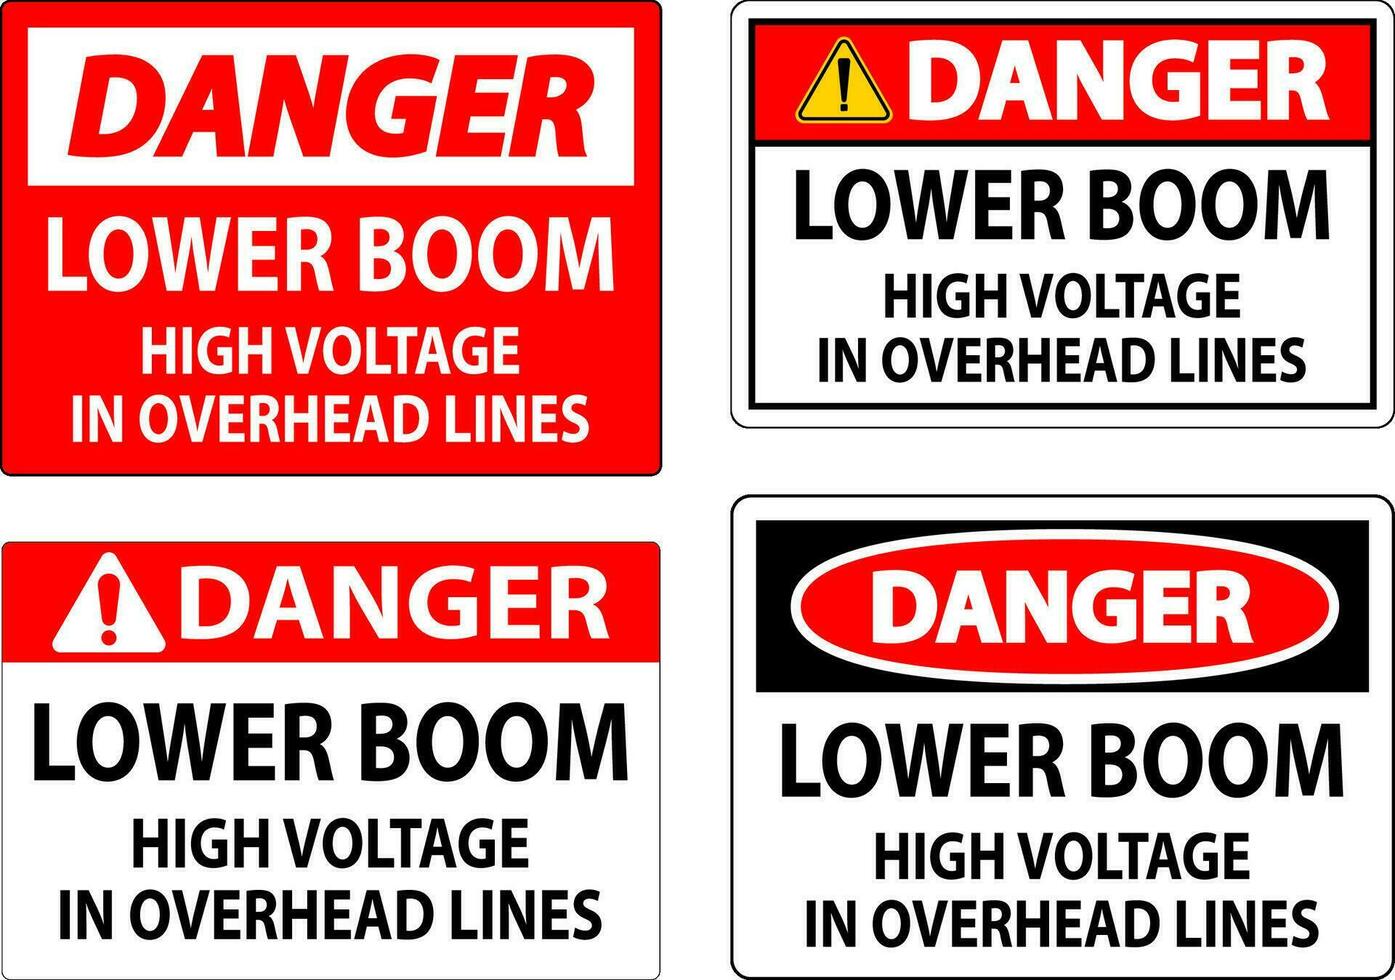 elektrisch Sicherheit Zeichen Achtung - - niedriger Boom hoch Stromspannung im Overhead Linien vektor